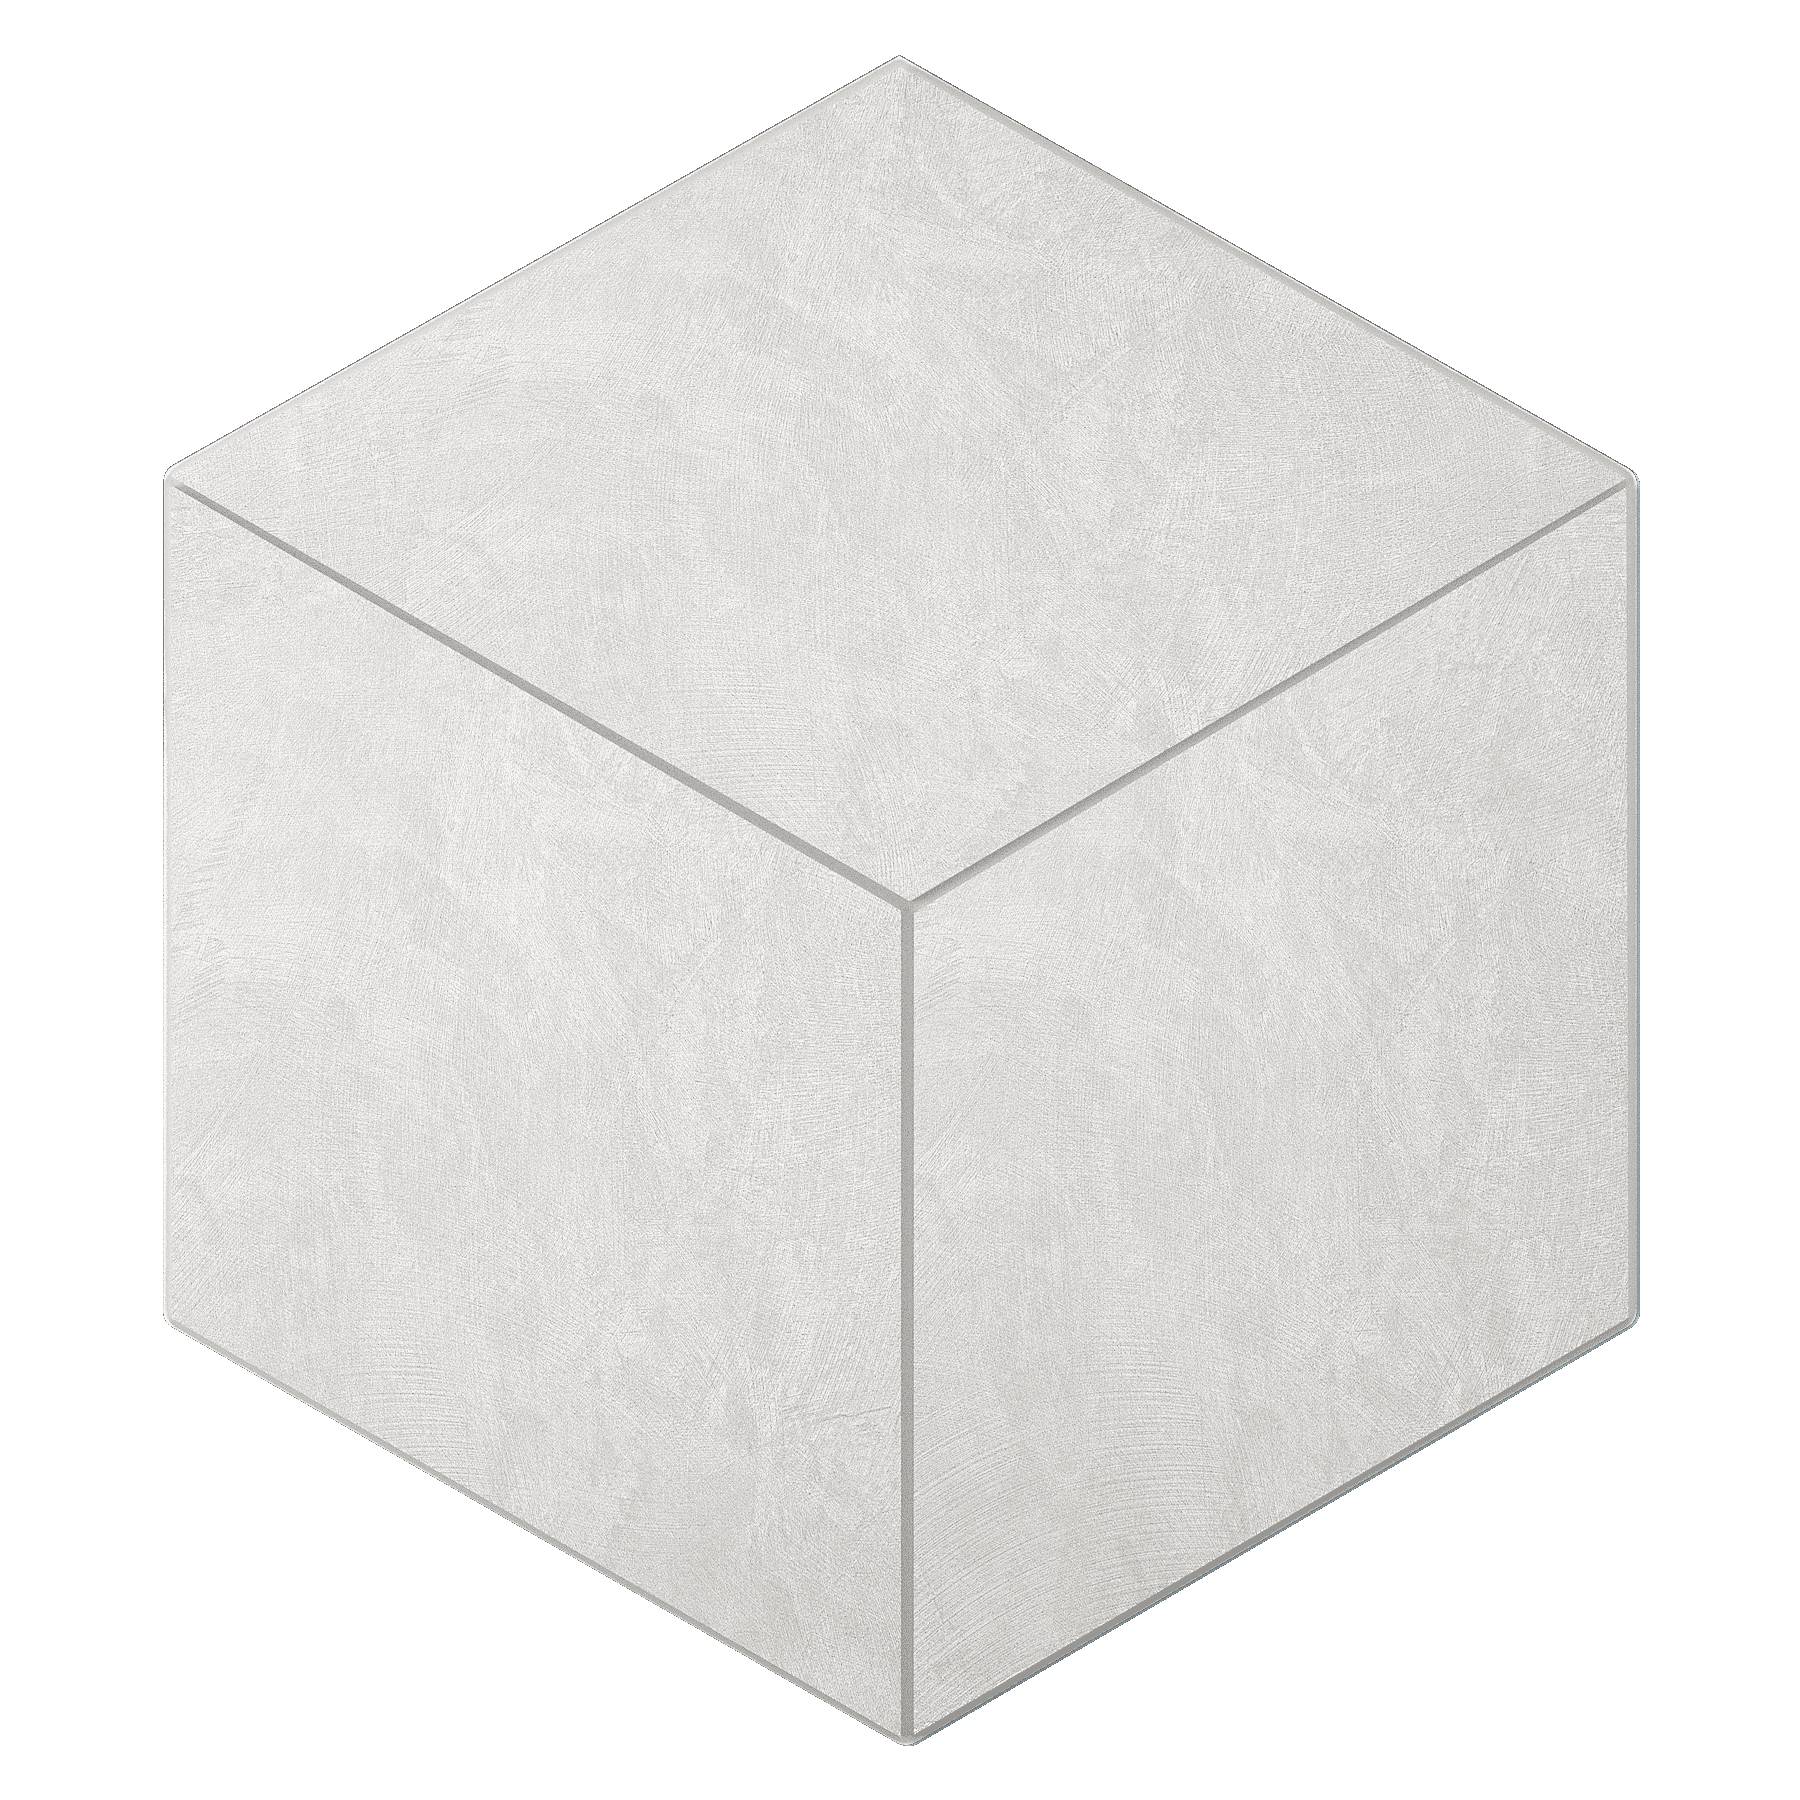 Мозаика Ametis Spectrum Milky White SR00 Cube Непол. 29x25 мозаика ametis spectrum milky white grey sr00 sr01 cube непол 29x25